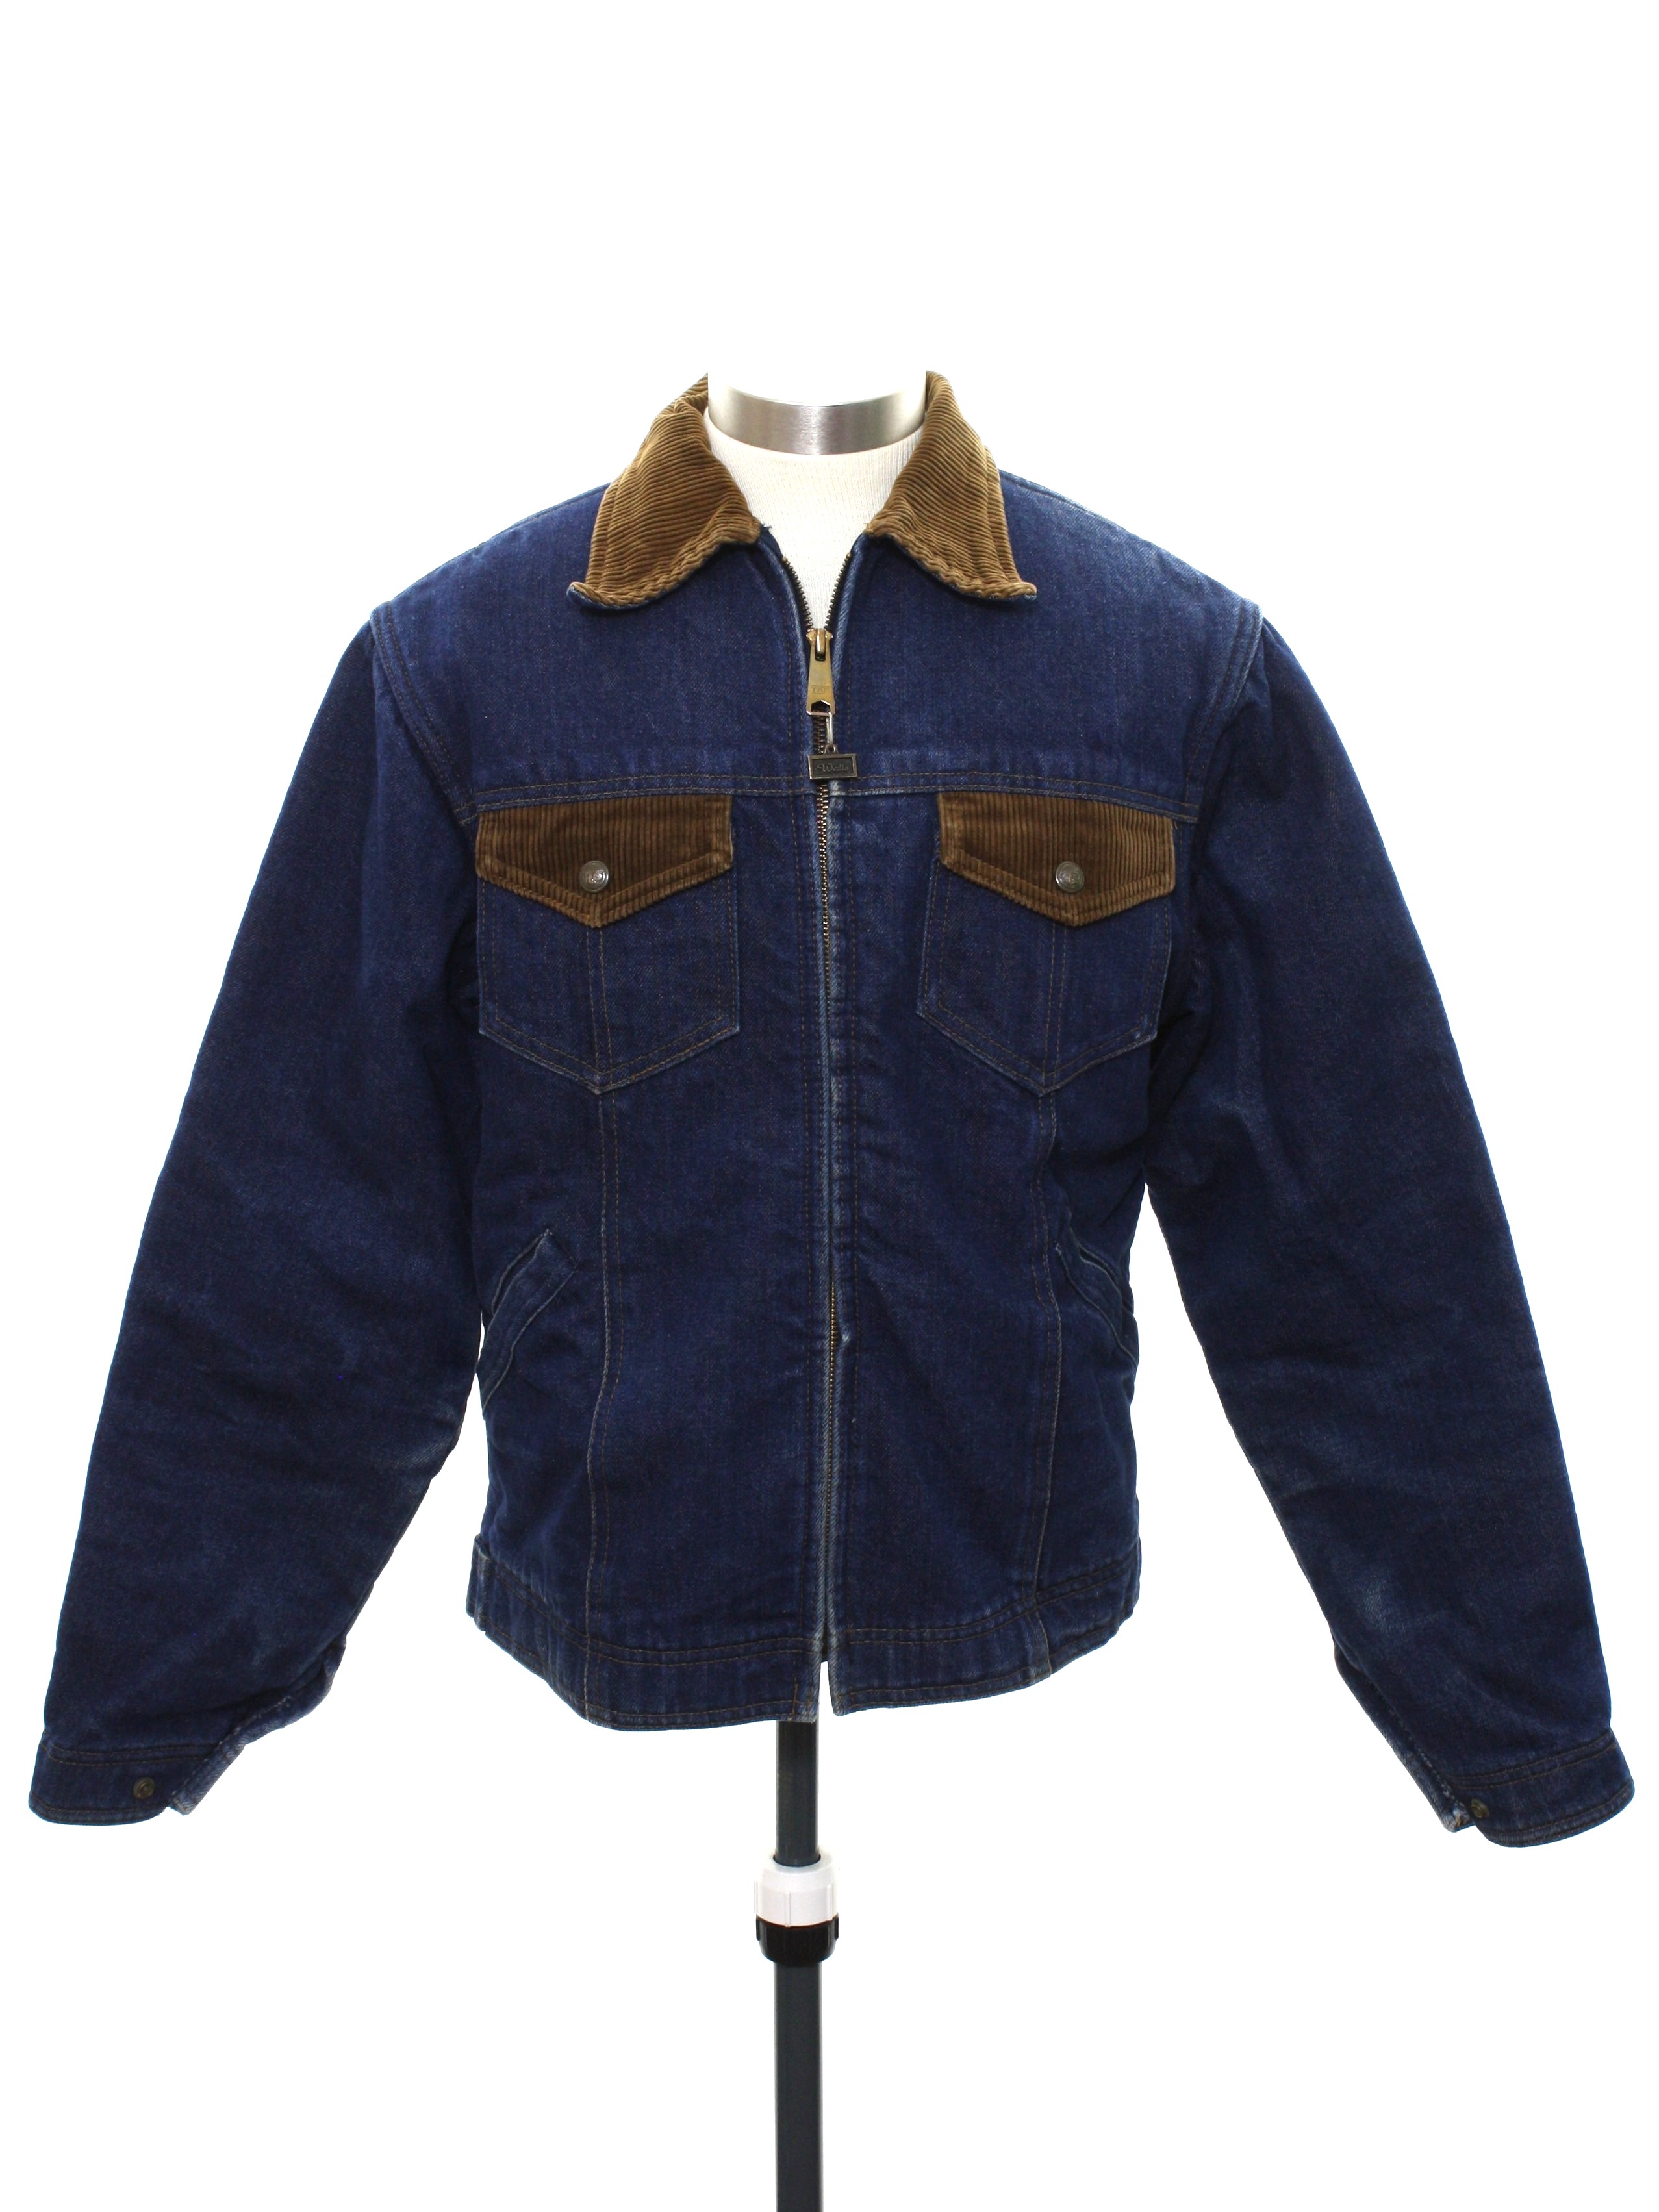 Retro 80's Jacket: 80s -Walls- Mens dark blue background cotton denim ...